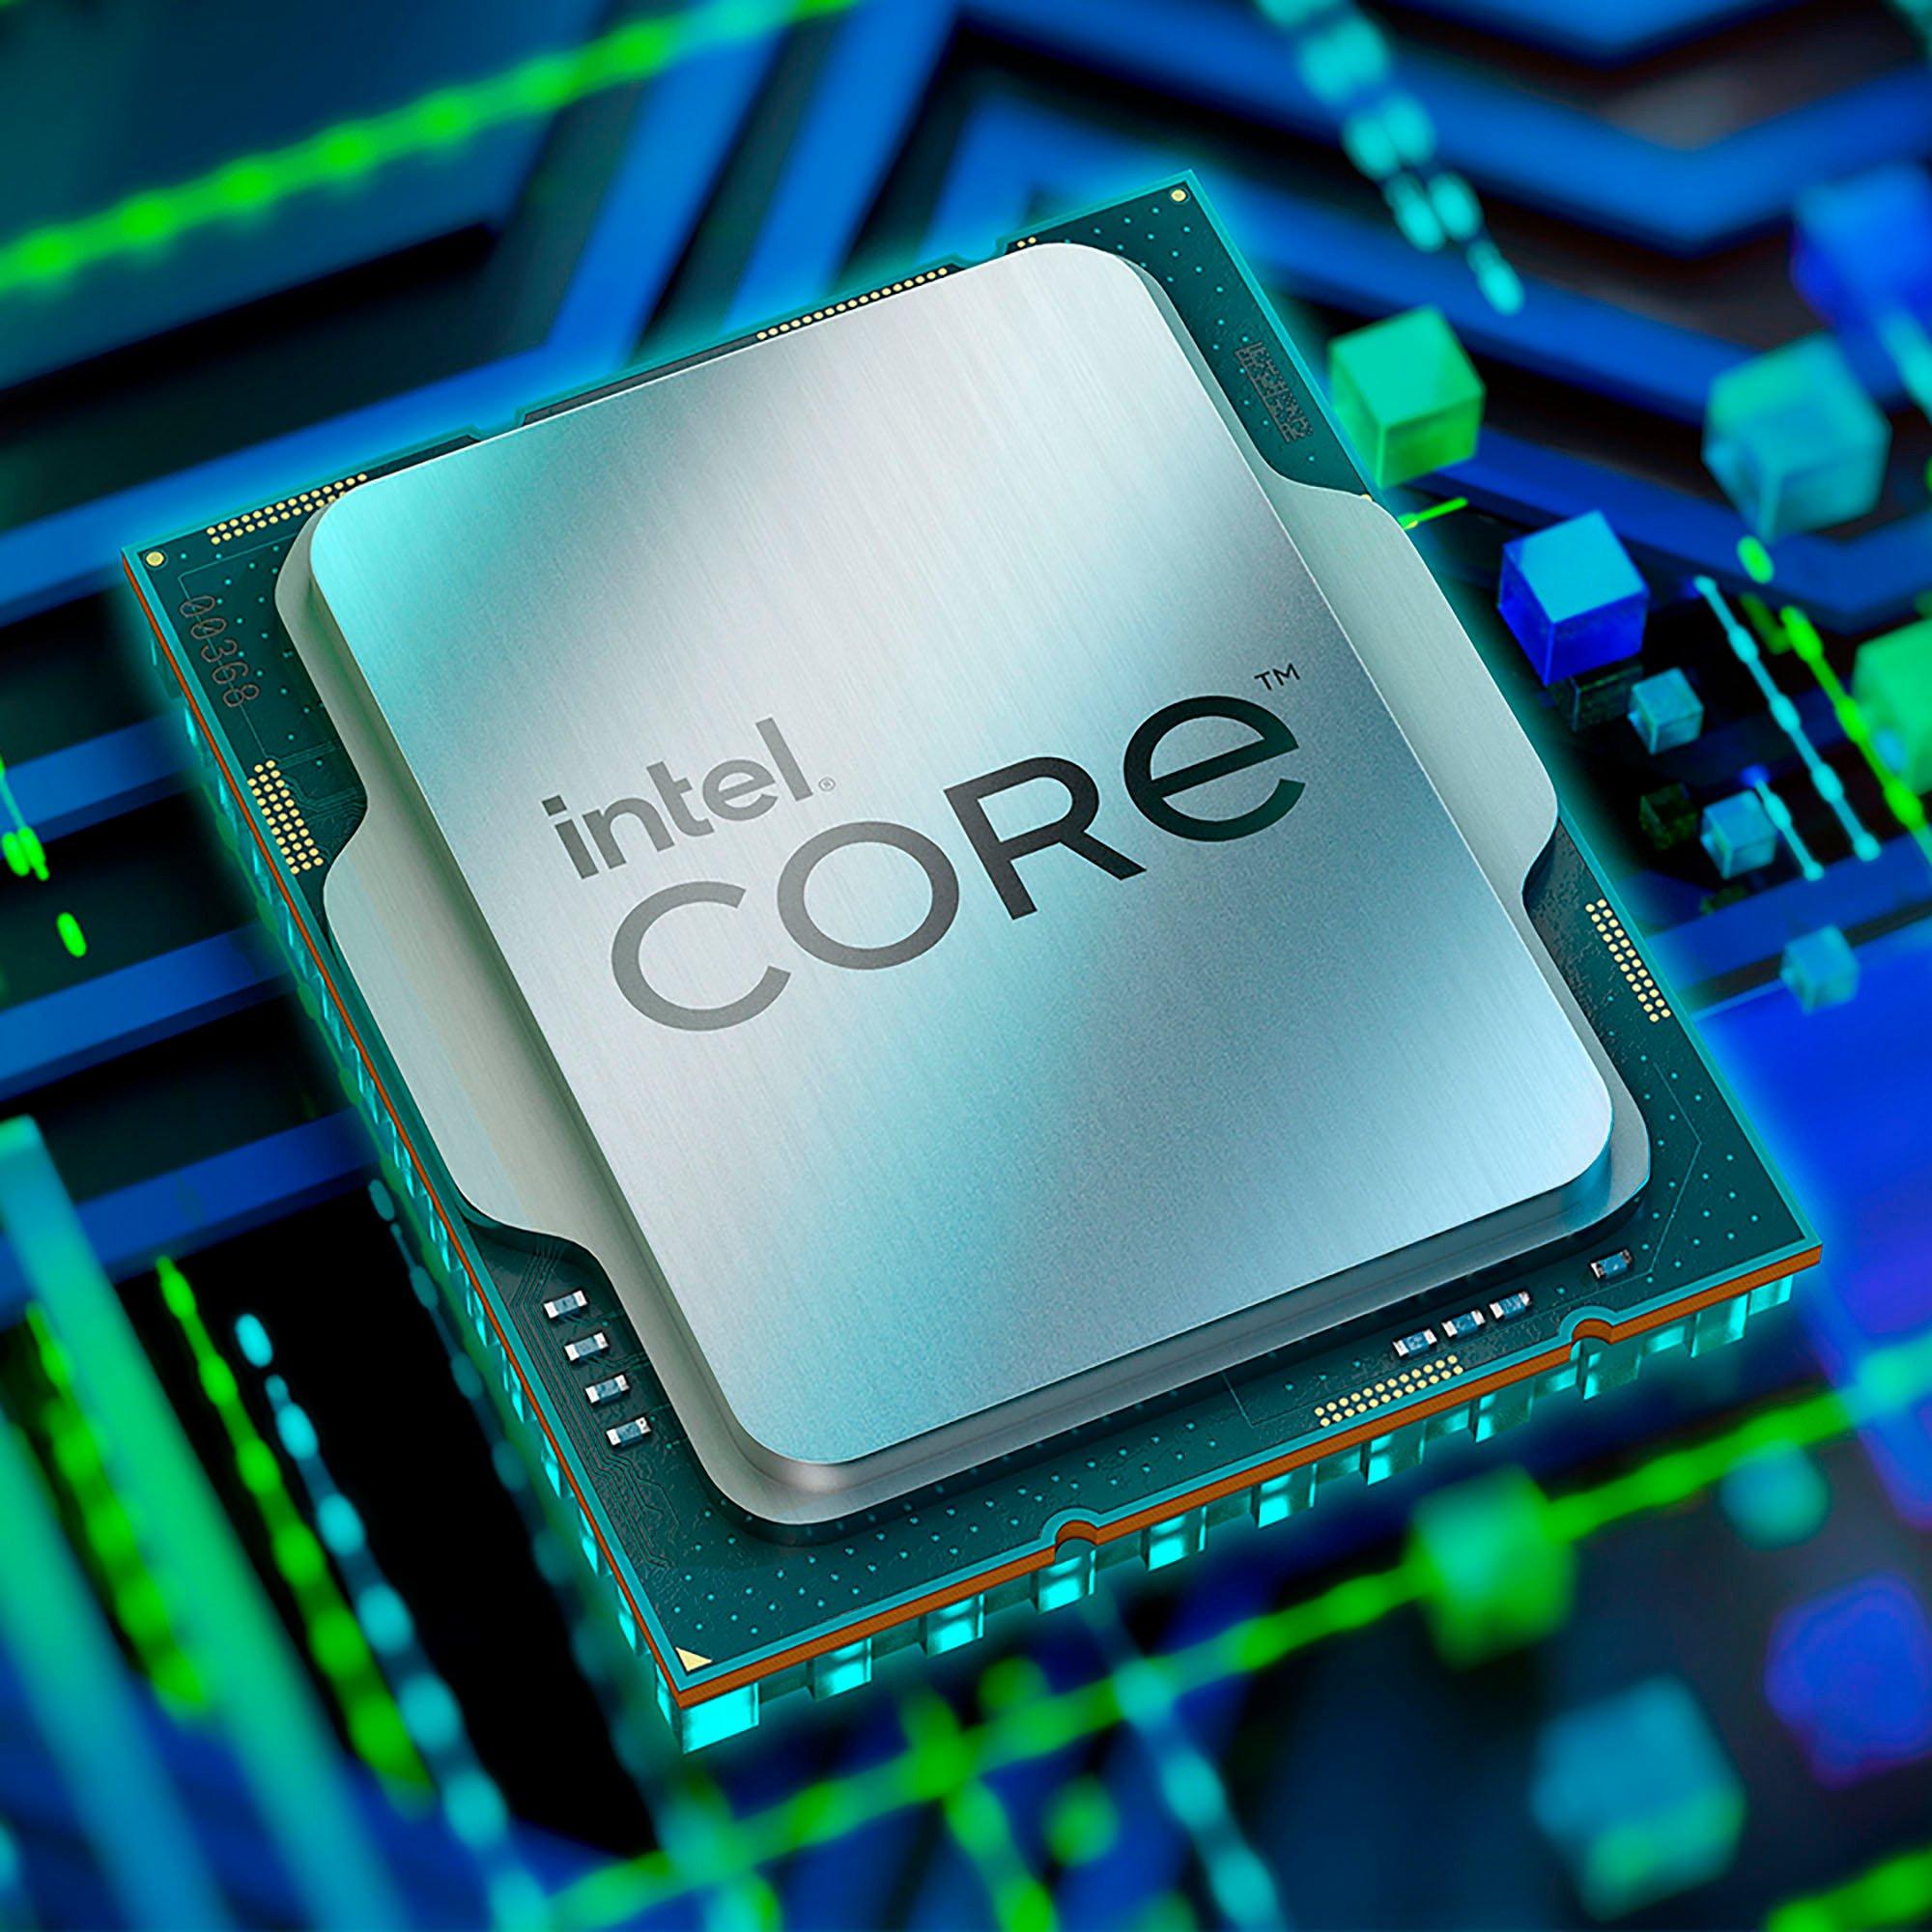 Intel Core i5-12400F (12th Gen) 6-Core 2.50 GHz LGA 1700 Desktop Processor